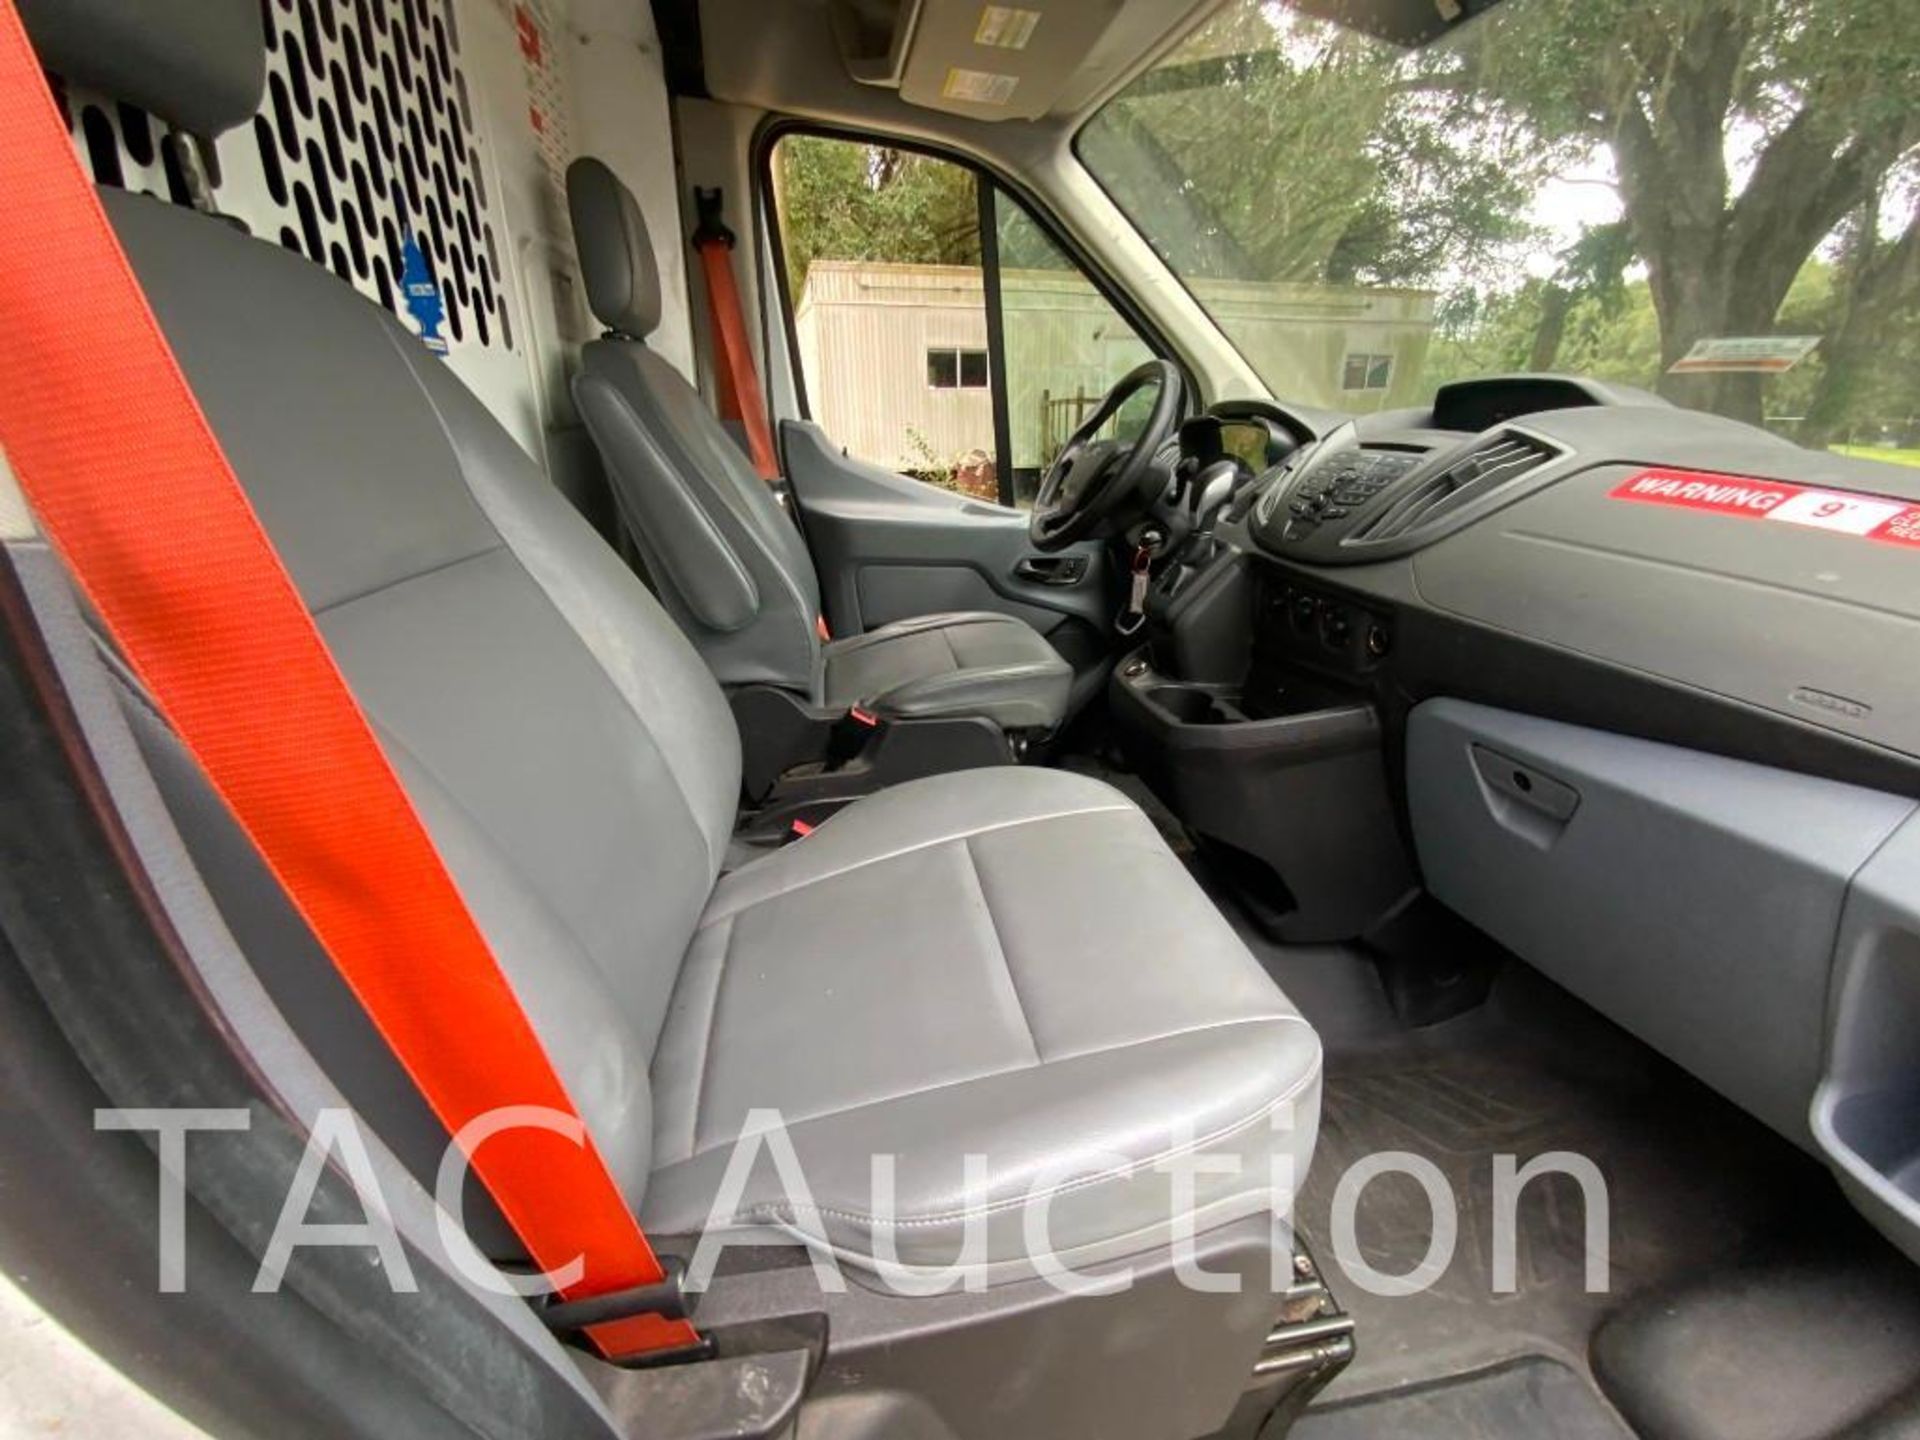 2019 Ford Transit 150 Cargo Van - Image 17 of 50